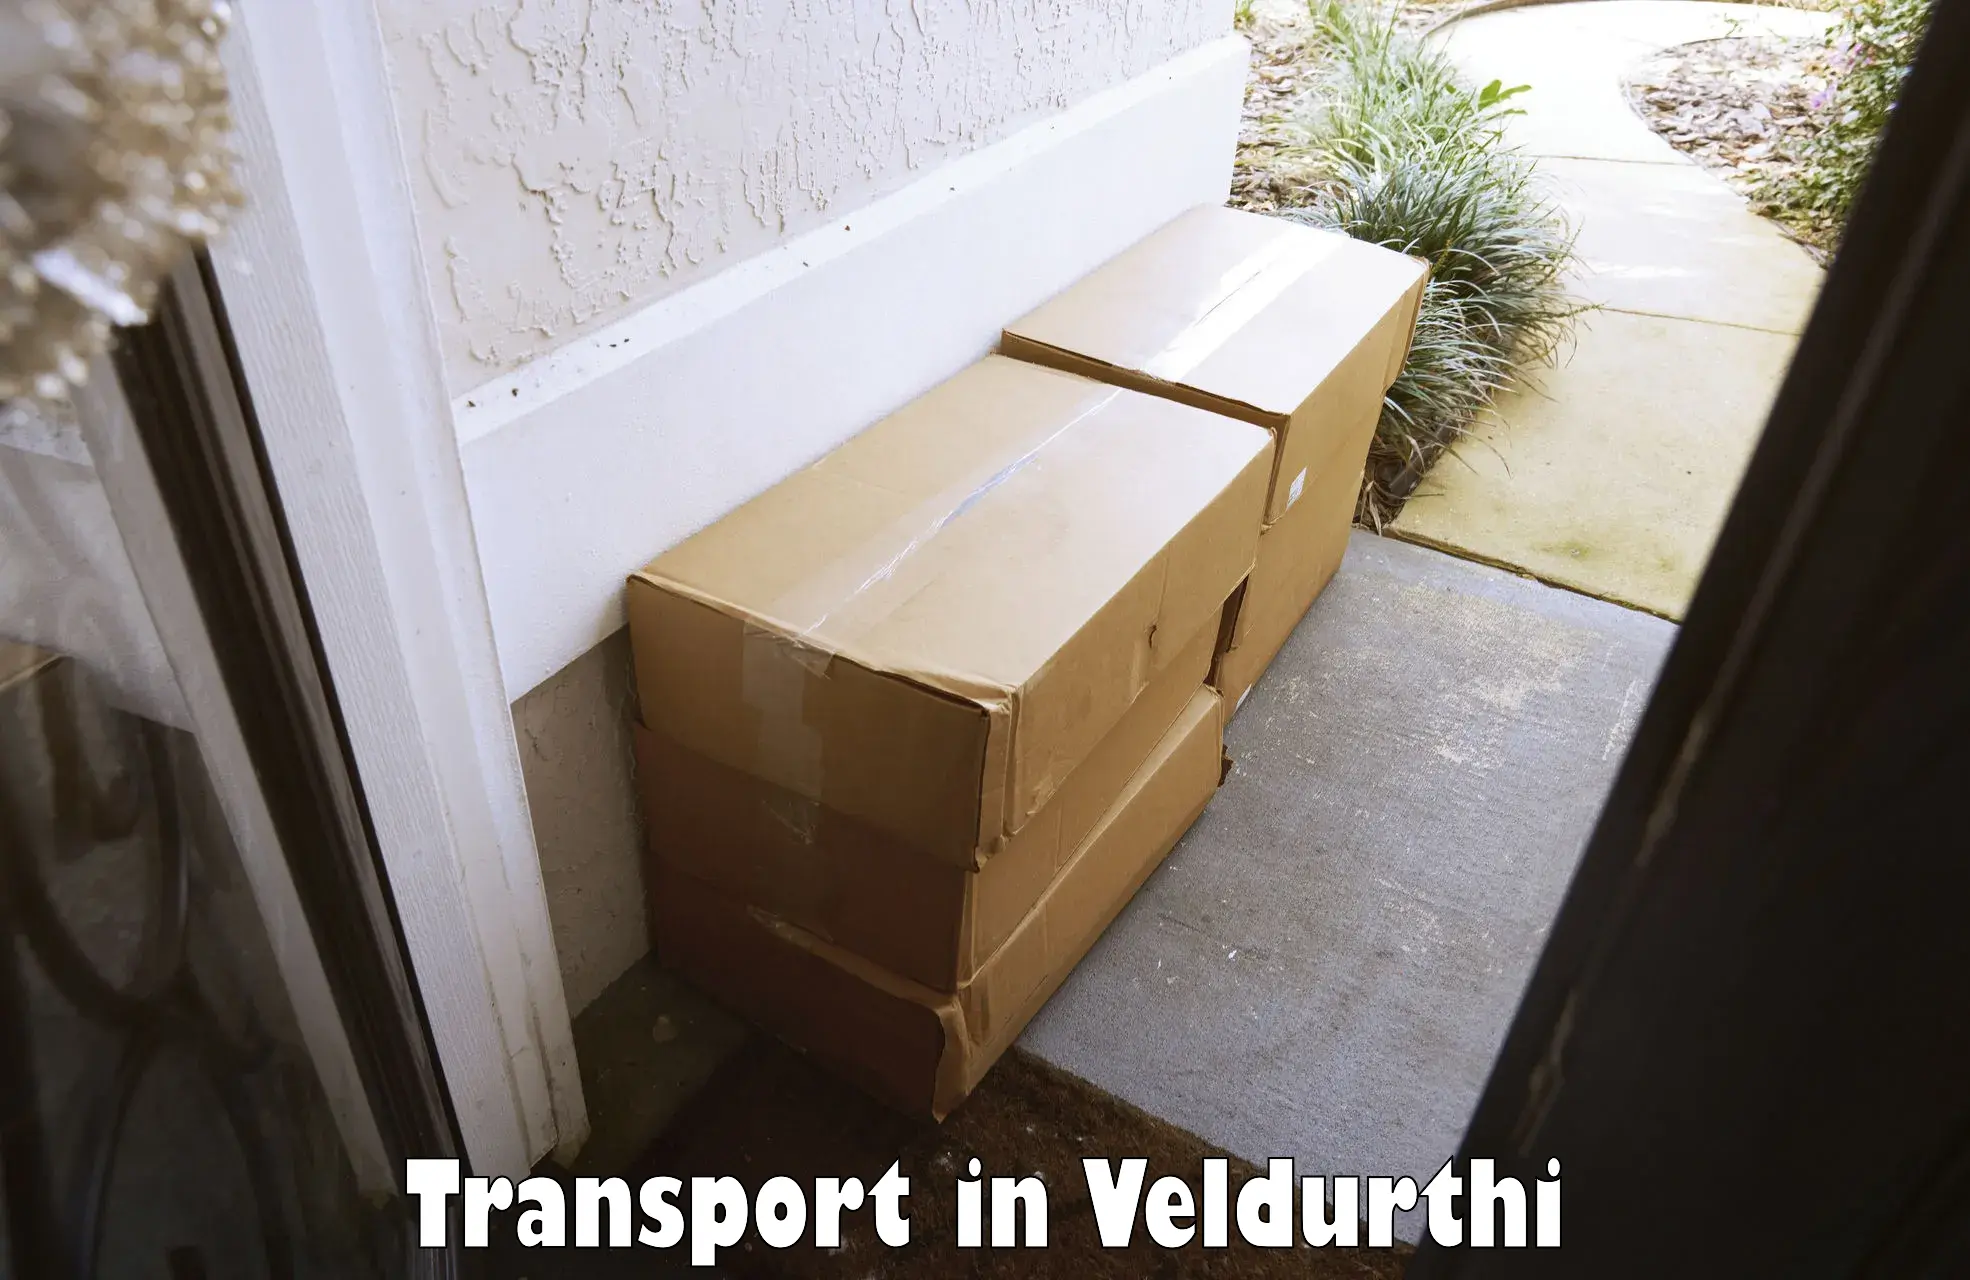 Intercity goods transport in Veldurthi